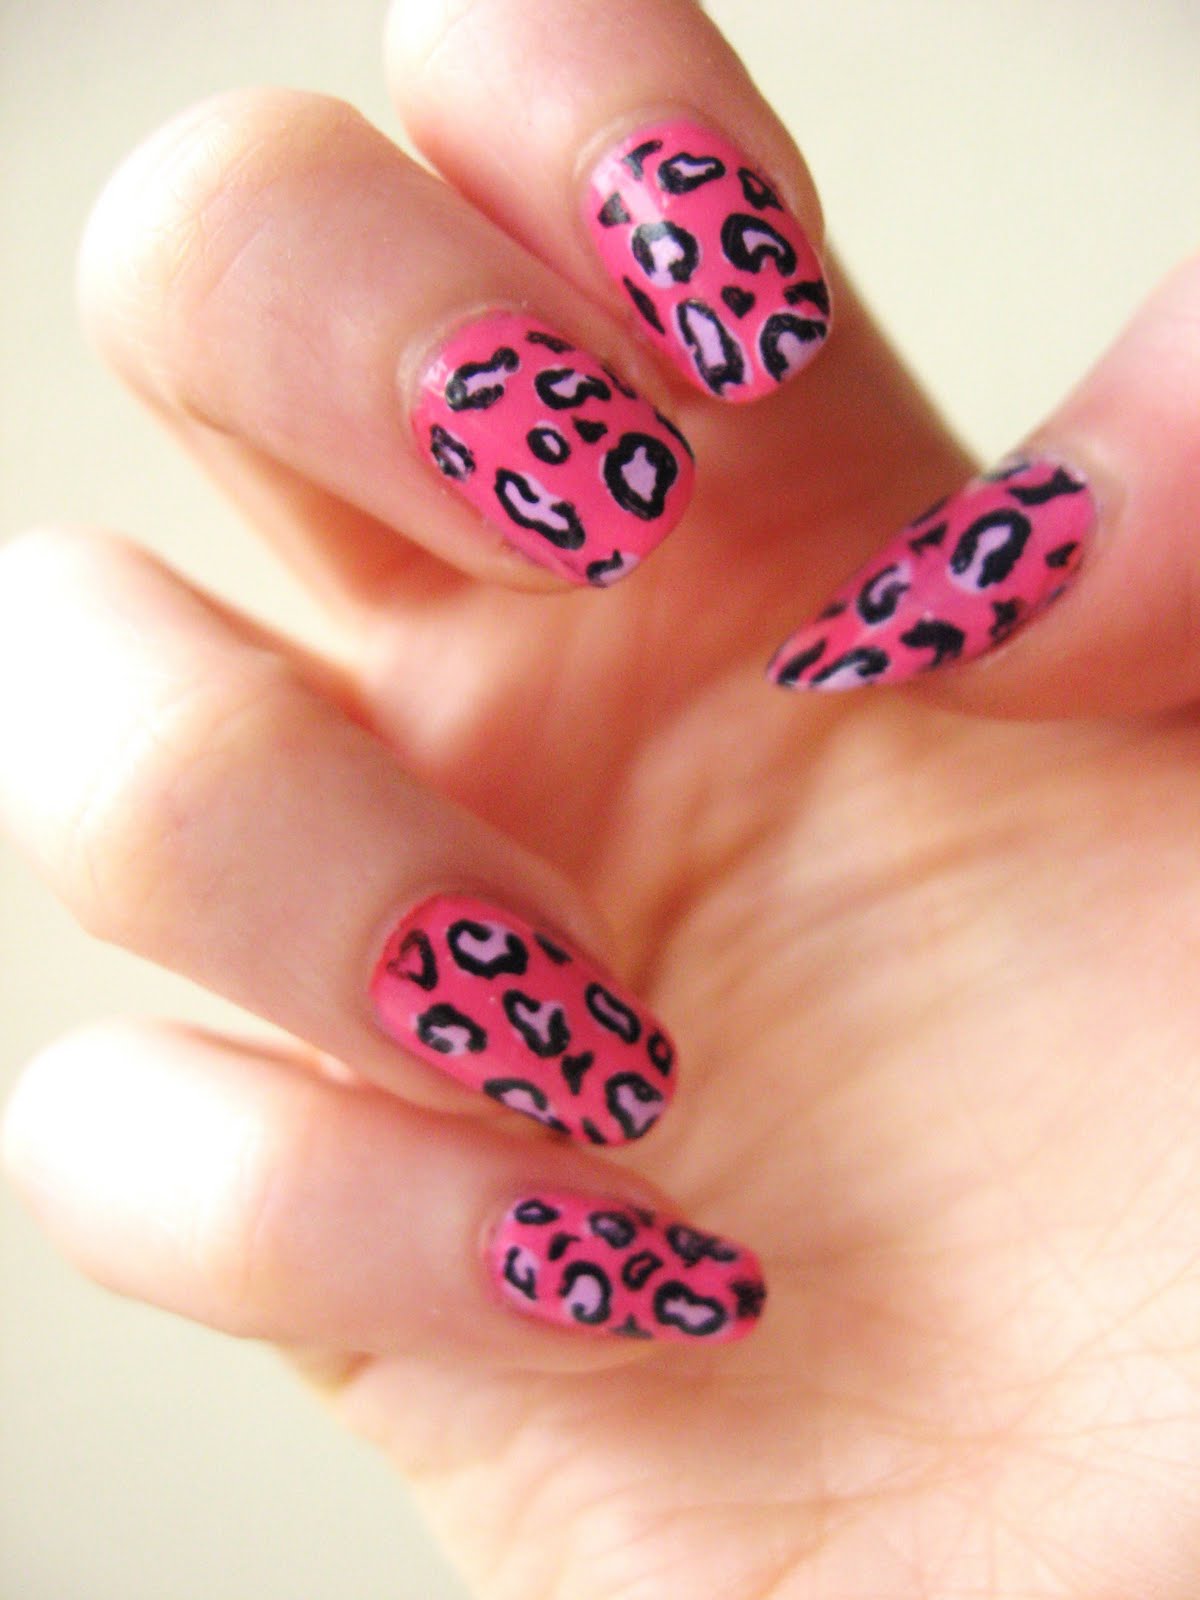 NOTD - Leopard Print Nails | Makeup Savvy - makeup and ...